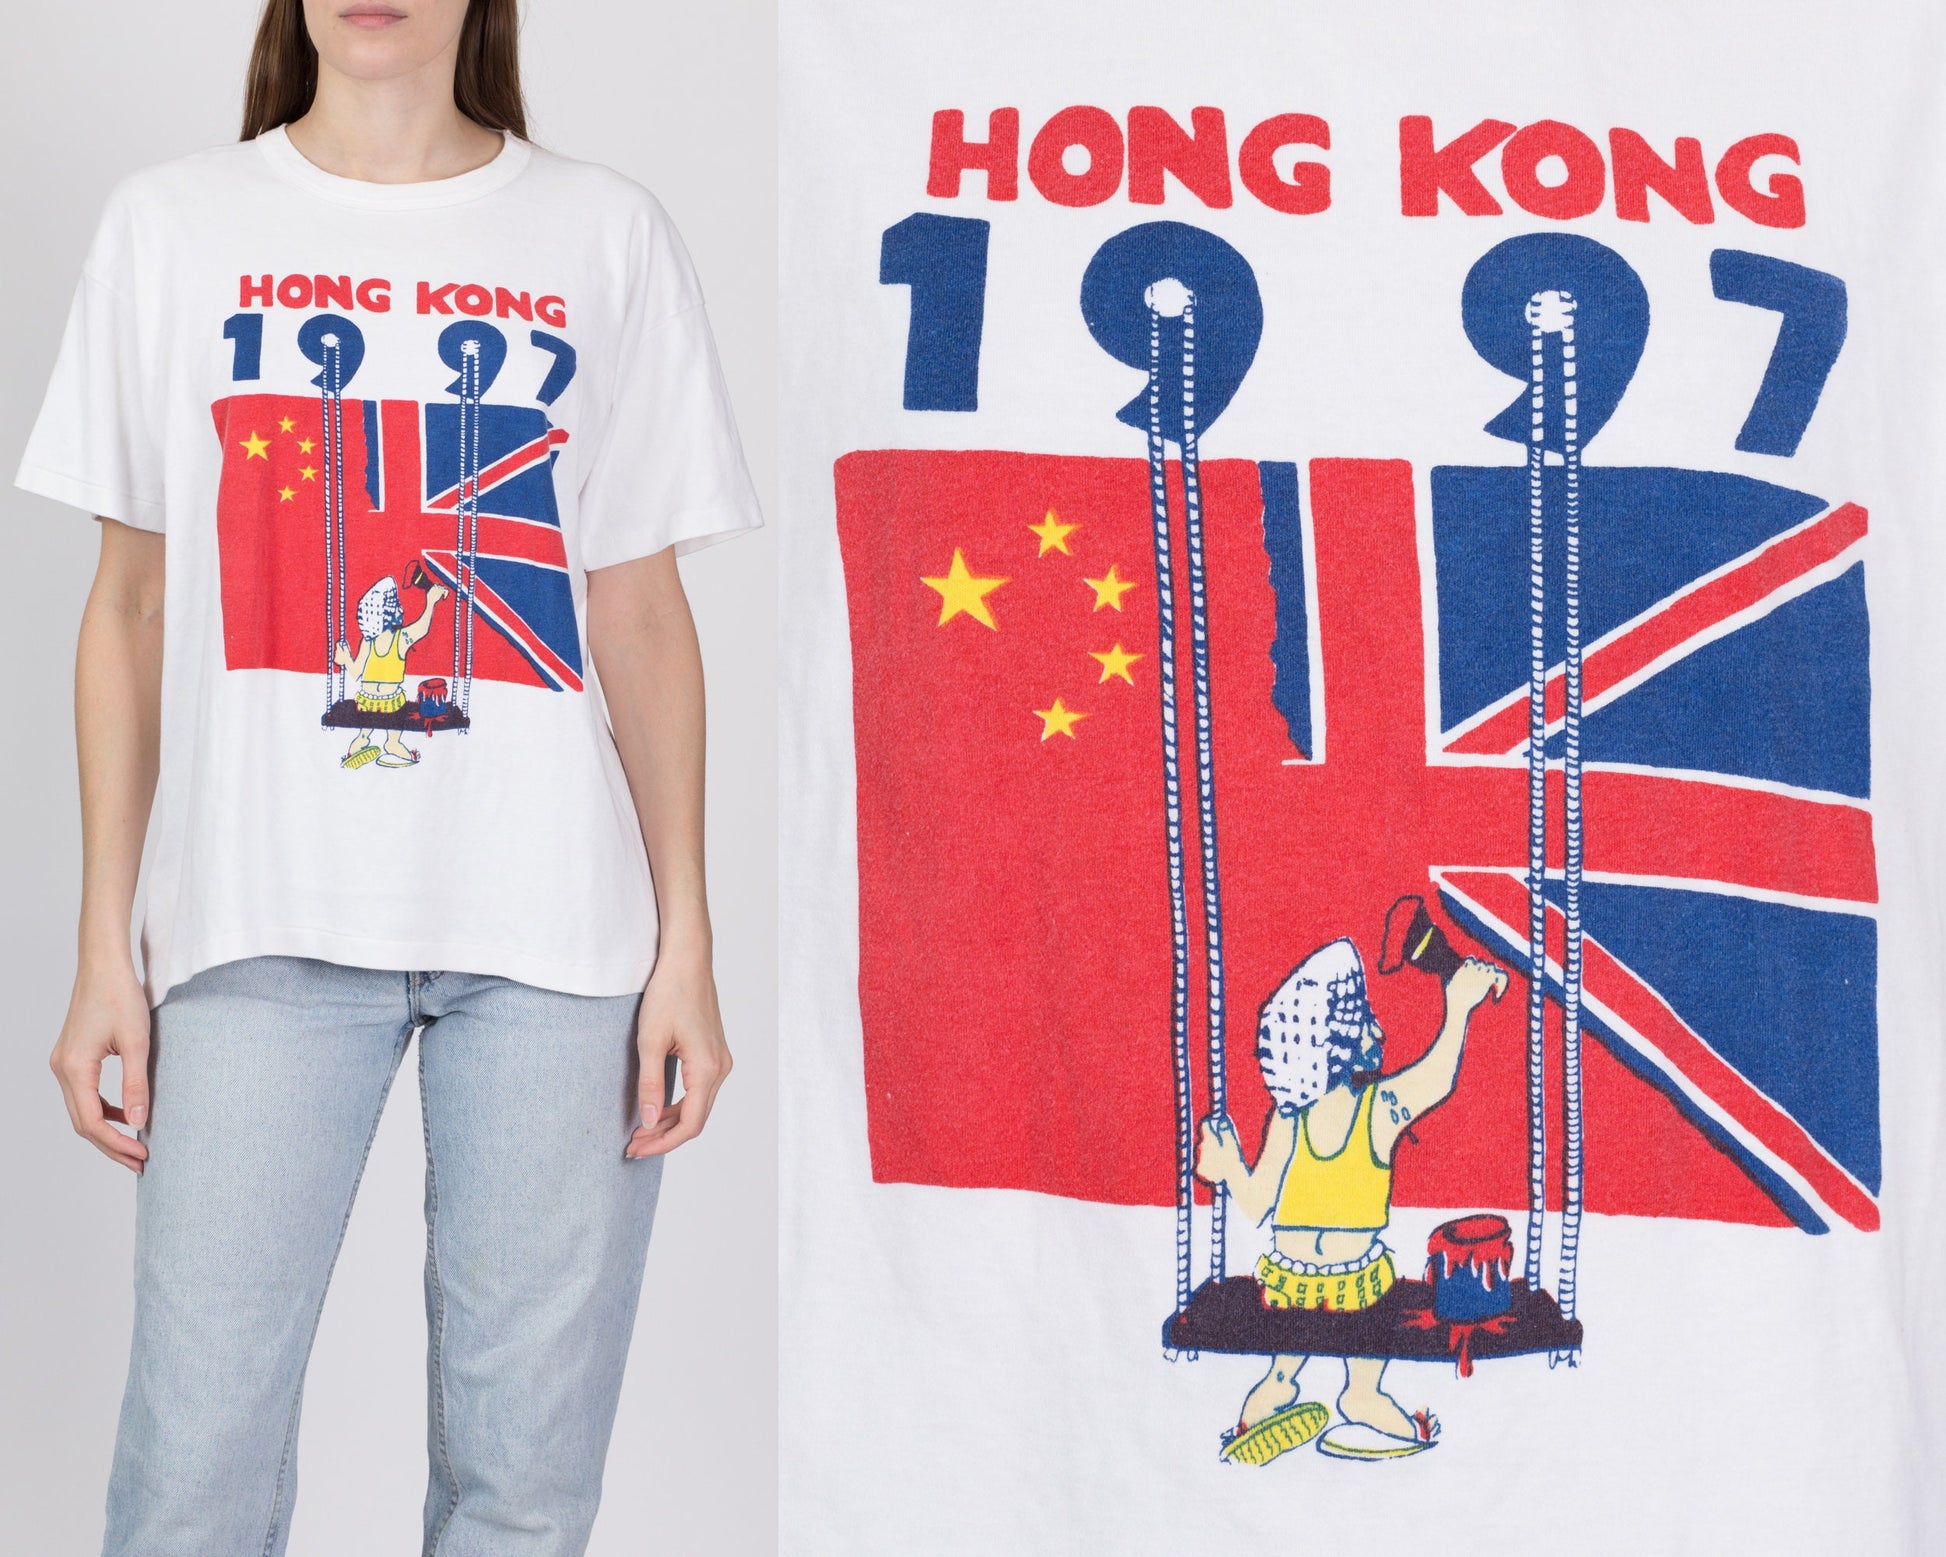 1997 Hong Kong Handover T Shirt - Men's Large, Women's XL 